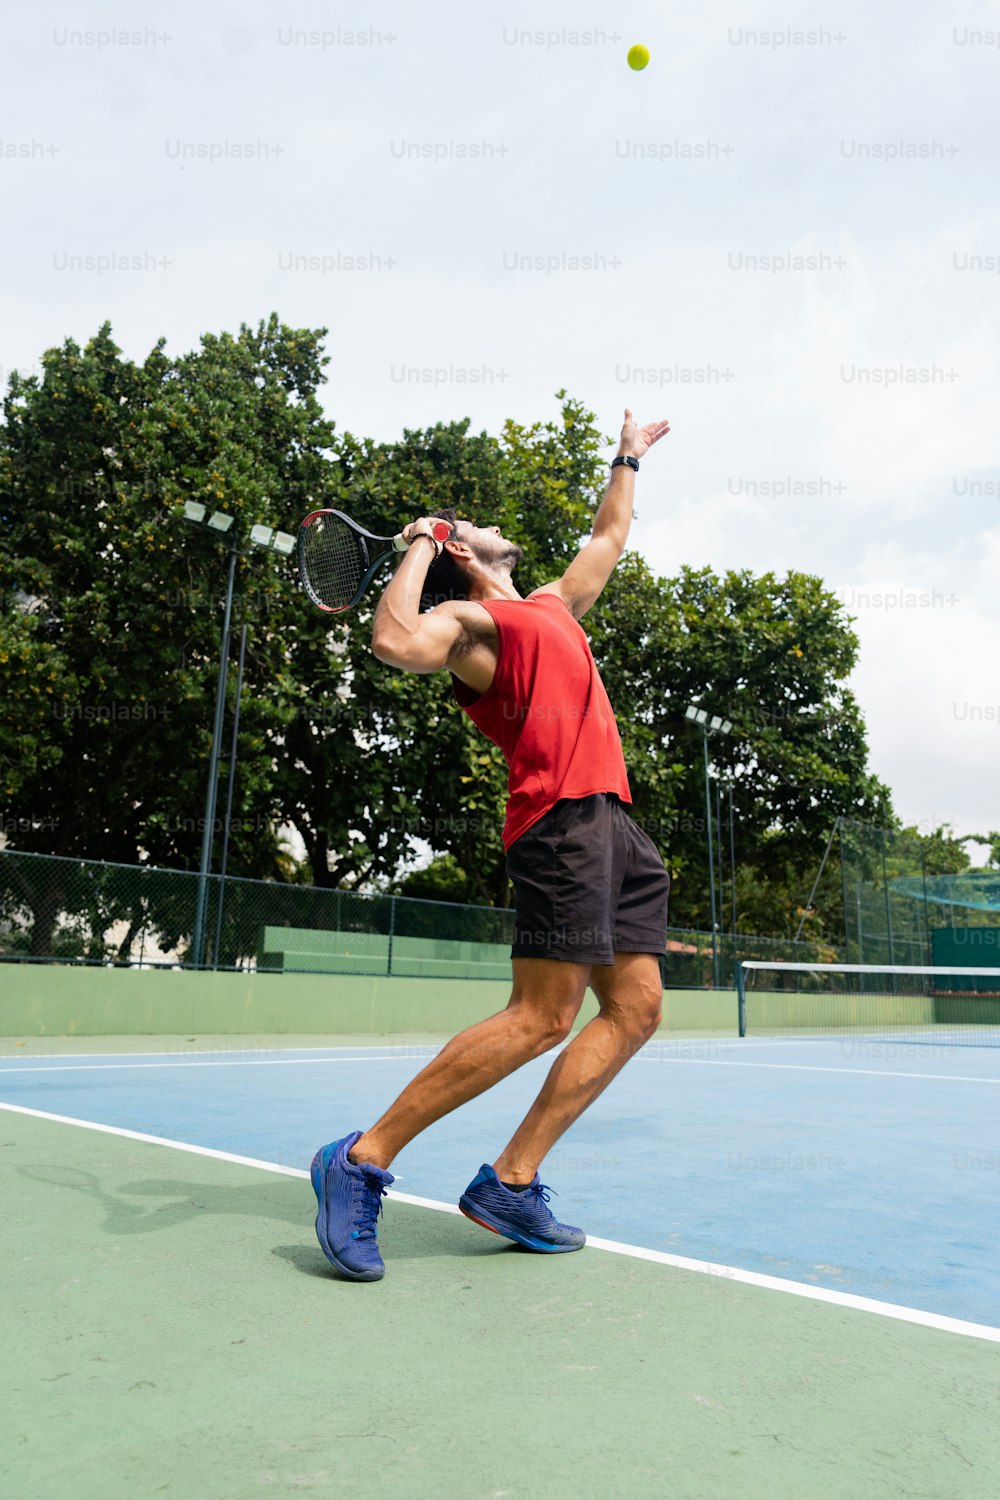 a man swinging a tennis racquet at a tennis ball